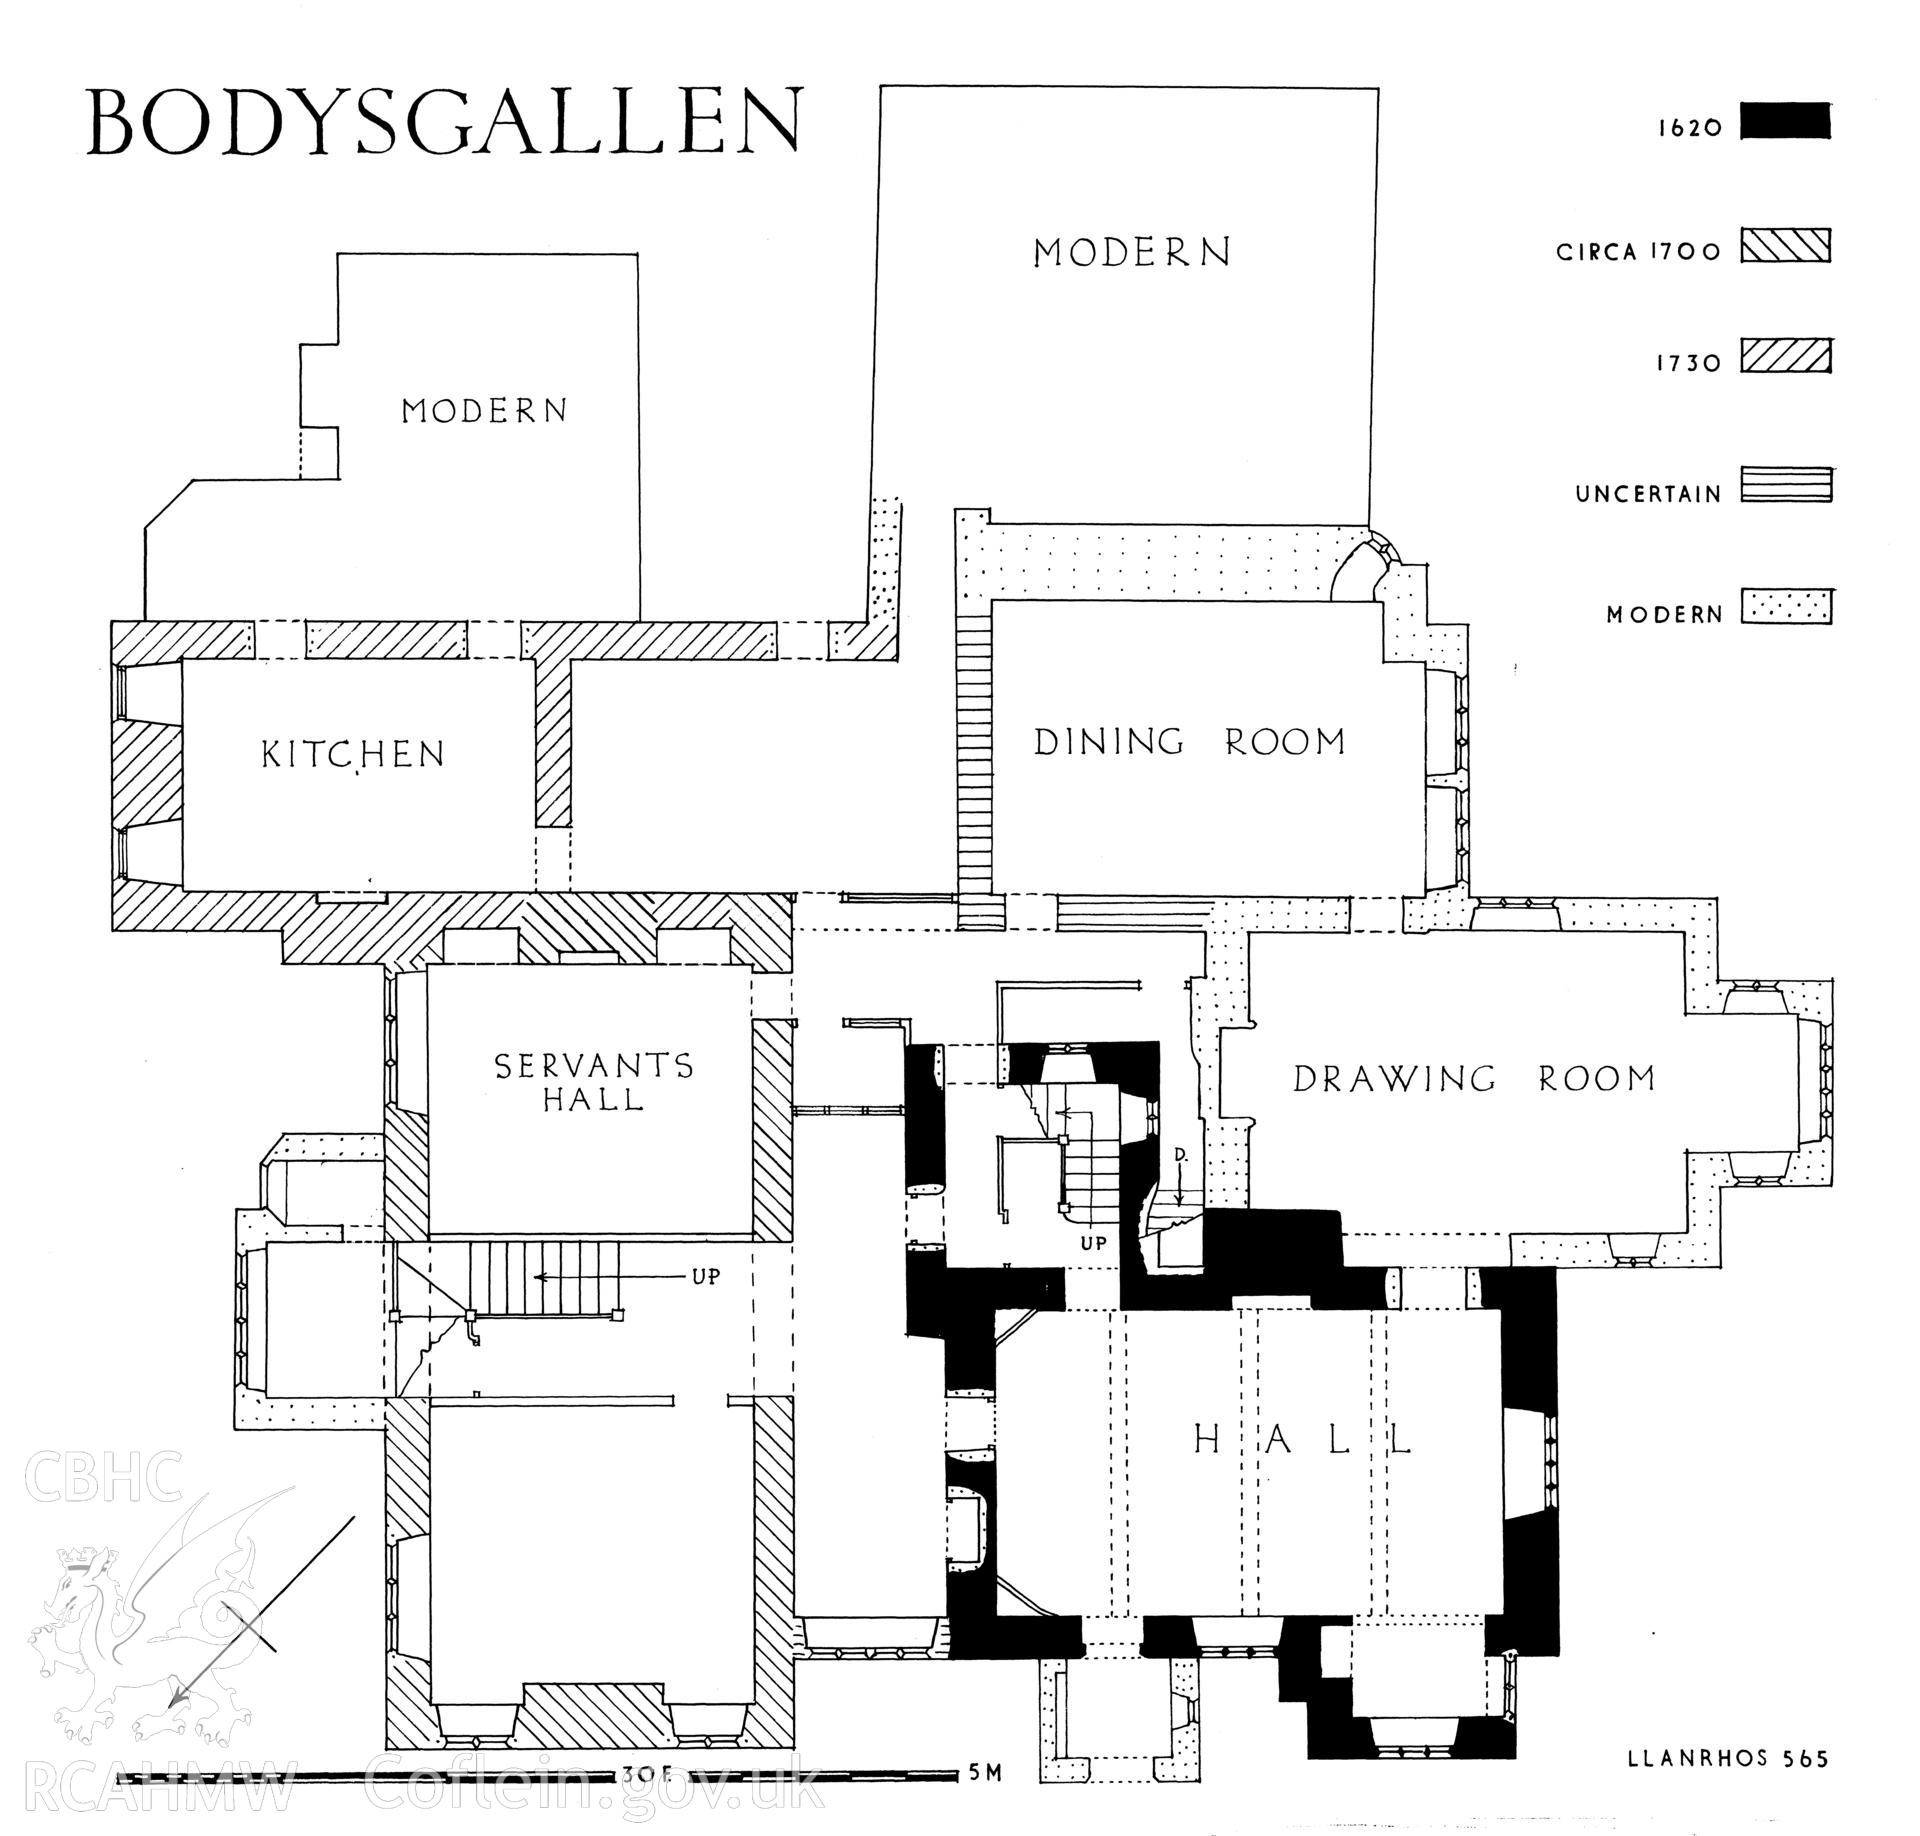 RCAHMW drawing (ink on linen) showing plan of Bodysgallen Hall, Llanrhychwyn, as published in Caerns Inventory vol I, fig 149.